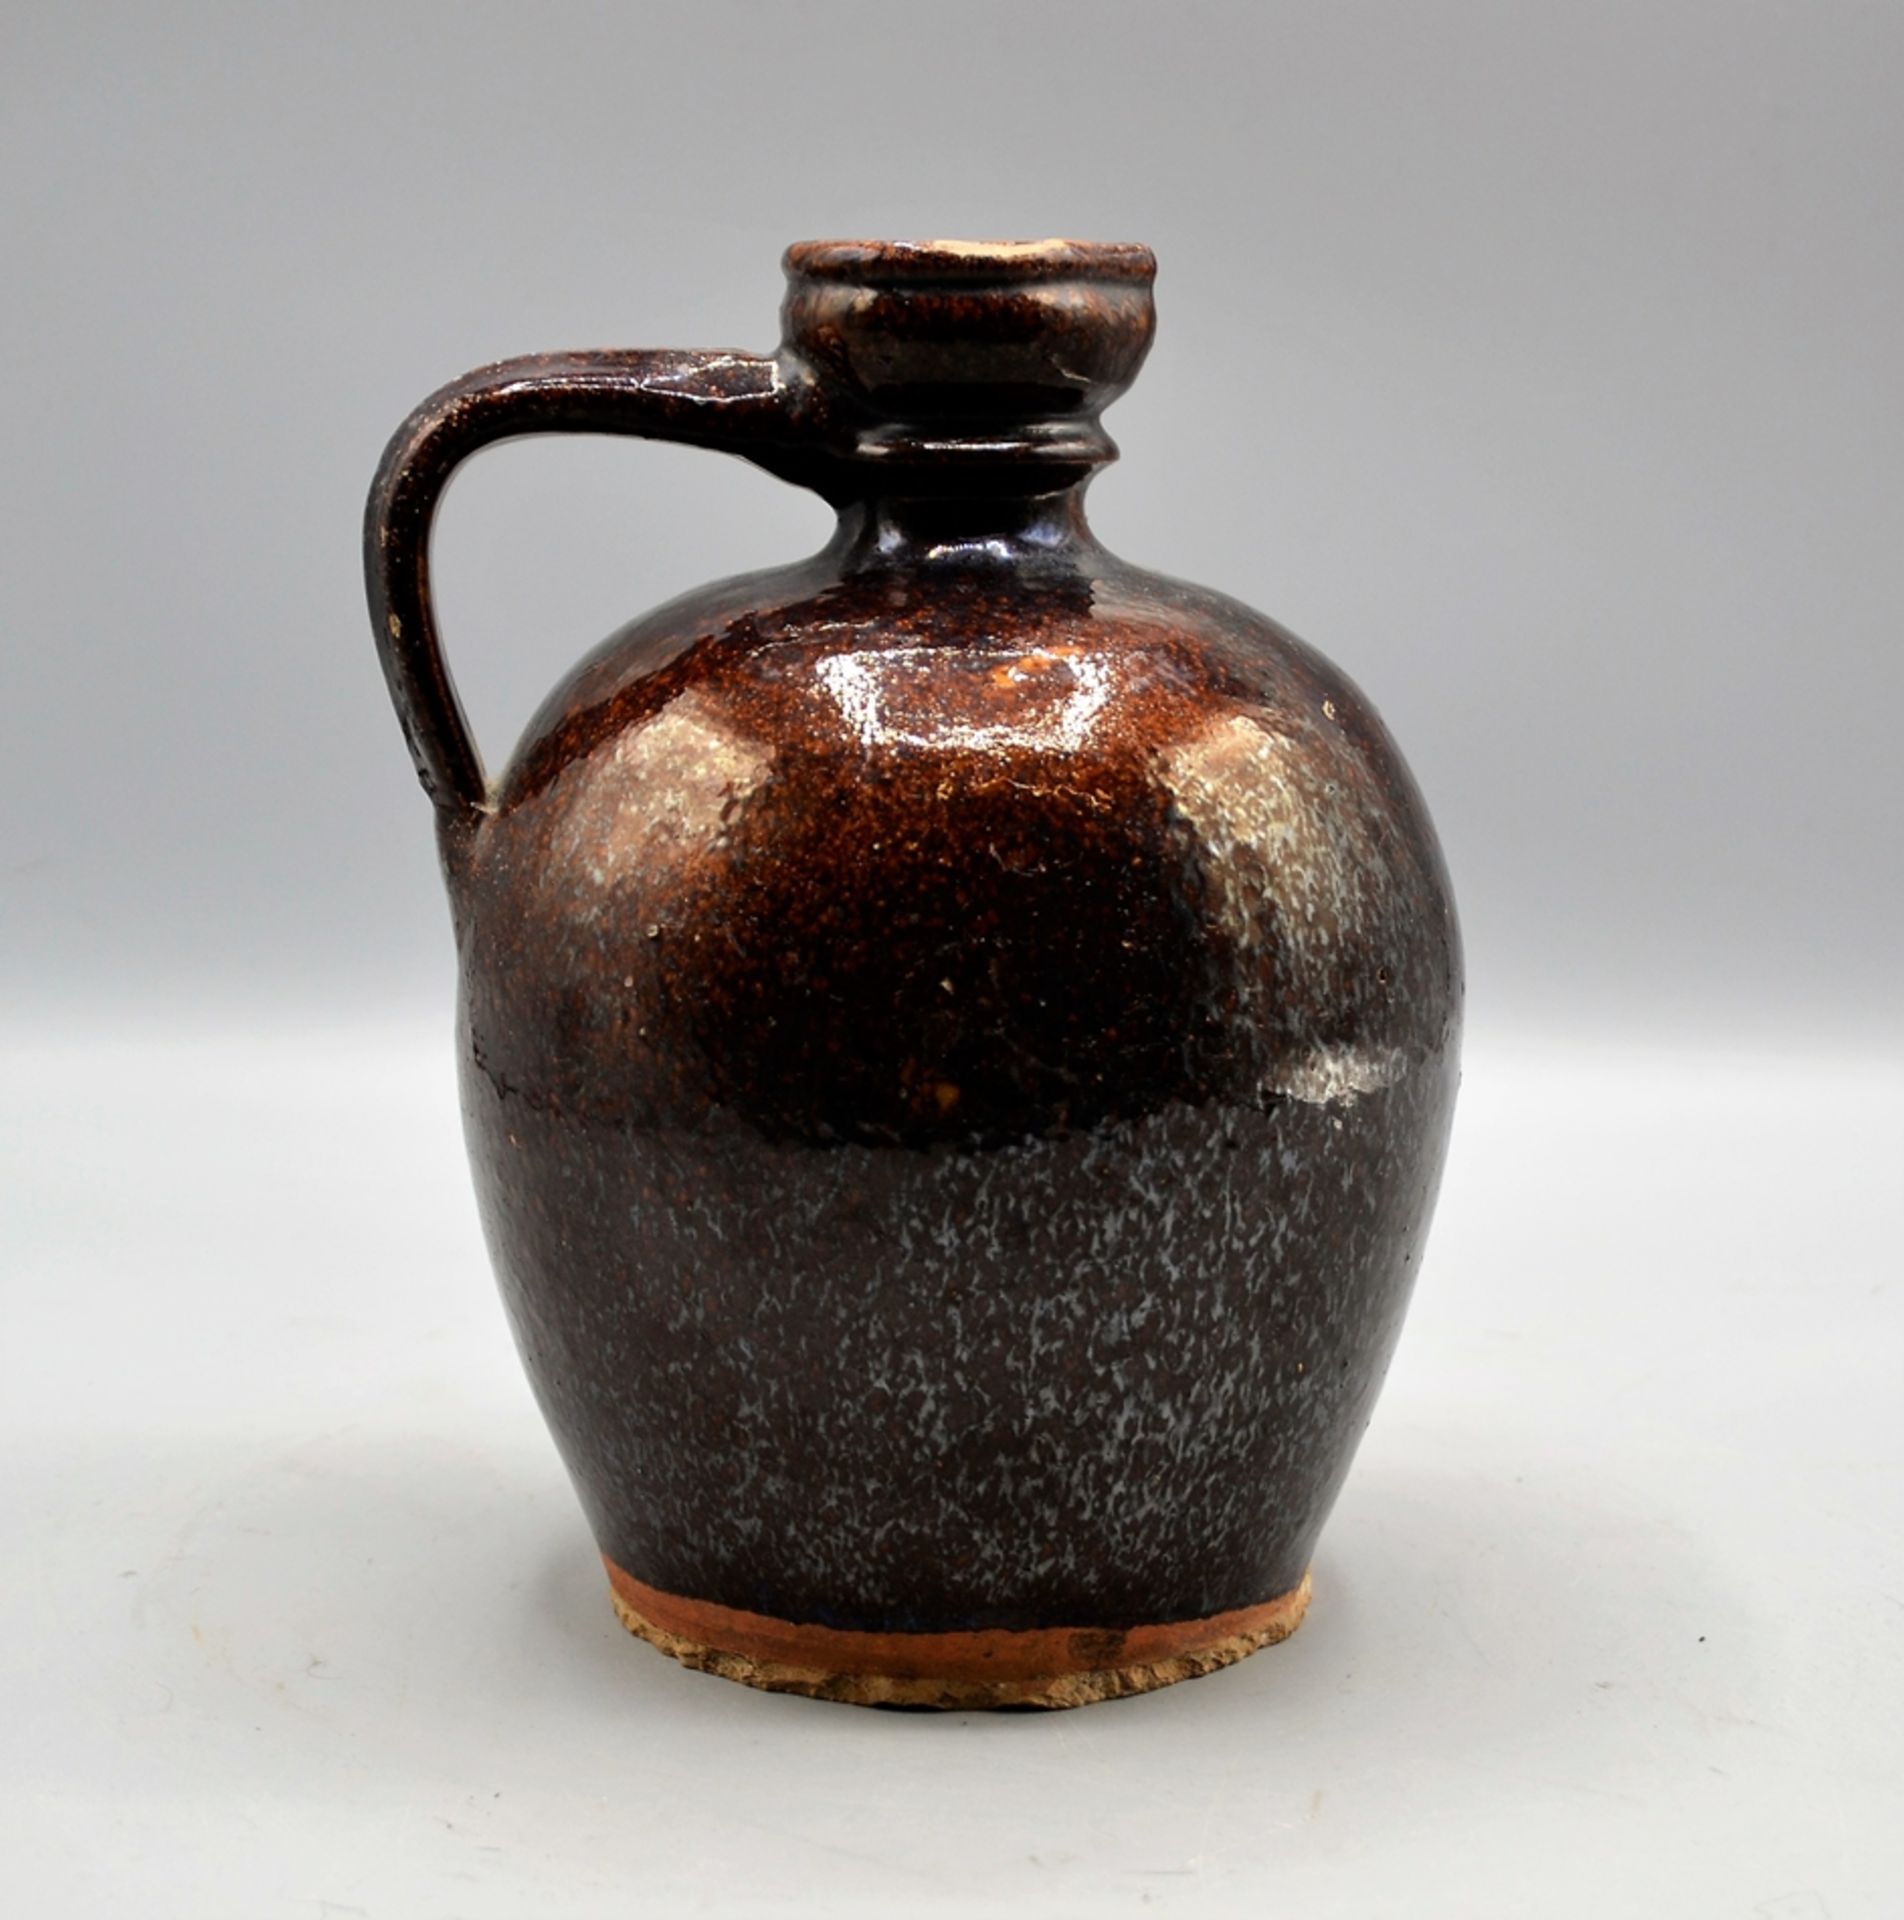 Bludser Hafnerware Keramik, braun glasiert, rötlicher Scherben, leicht bestoßen, ca. 20 cm - Bild 2 aus 4